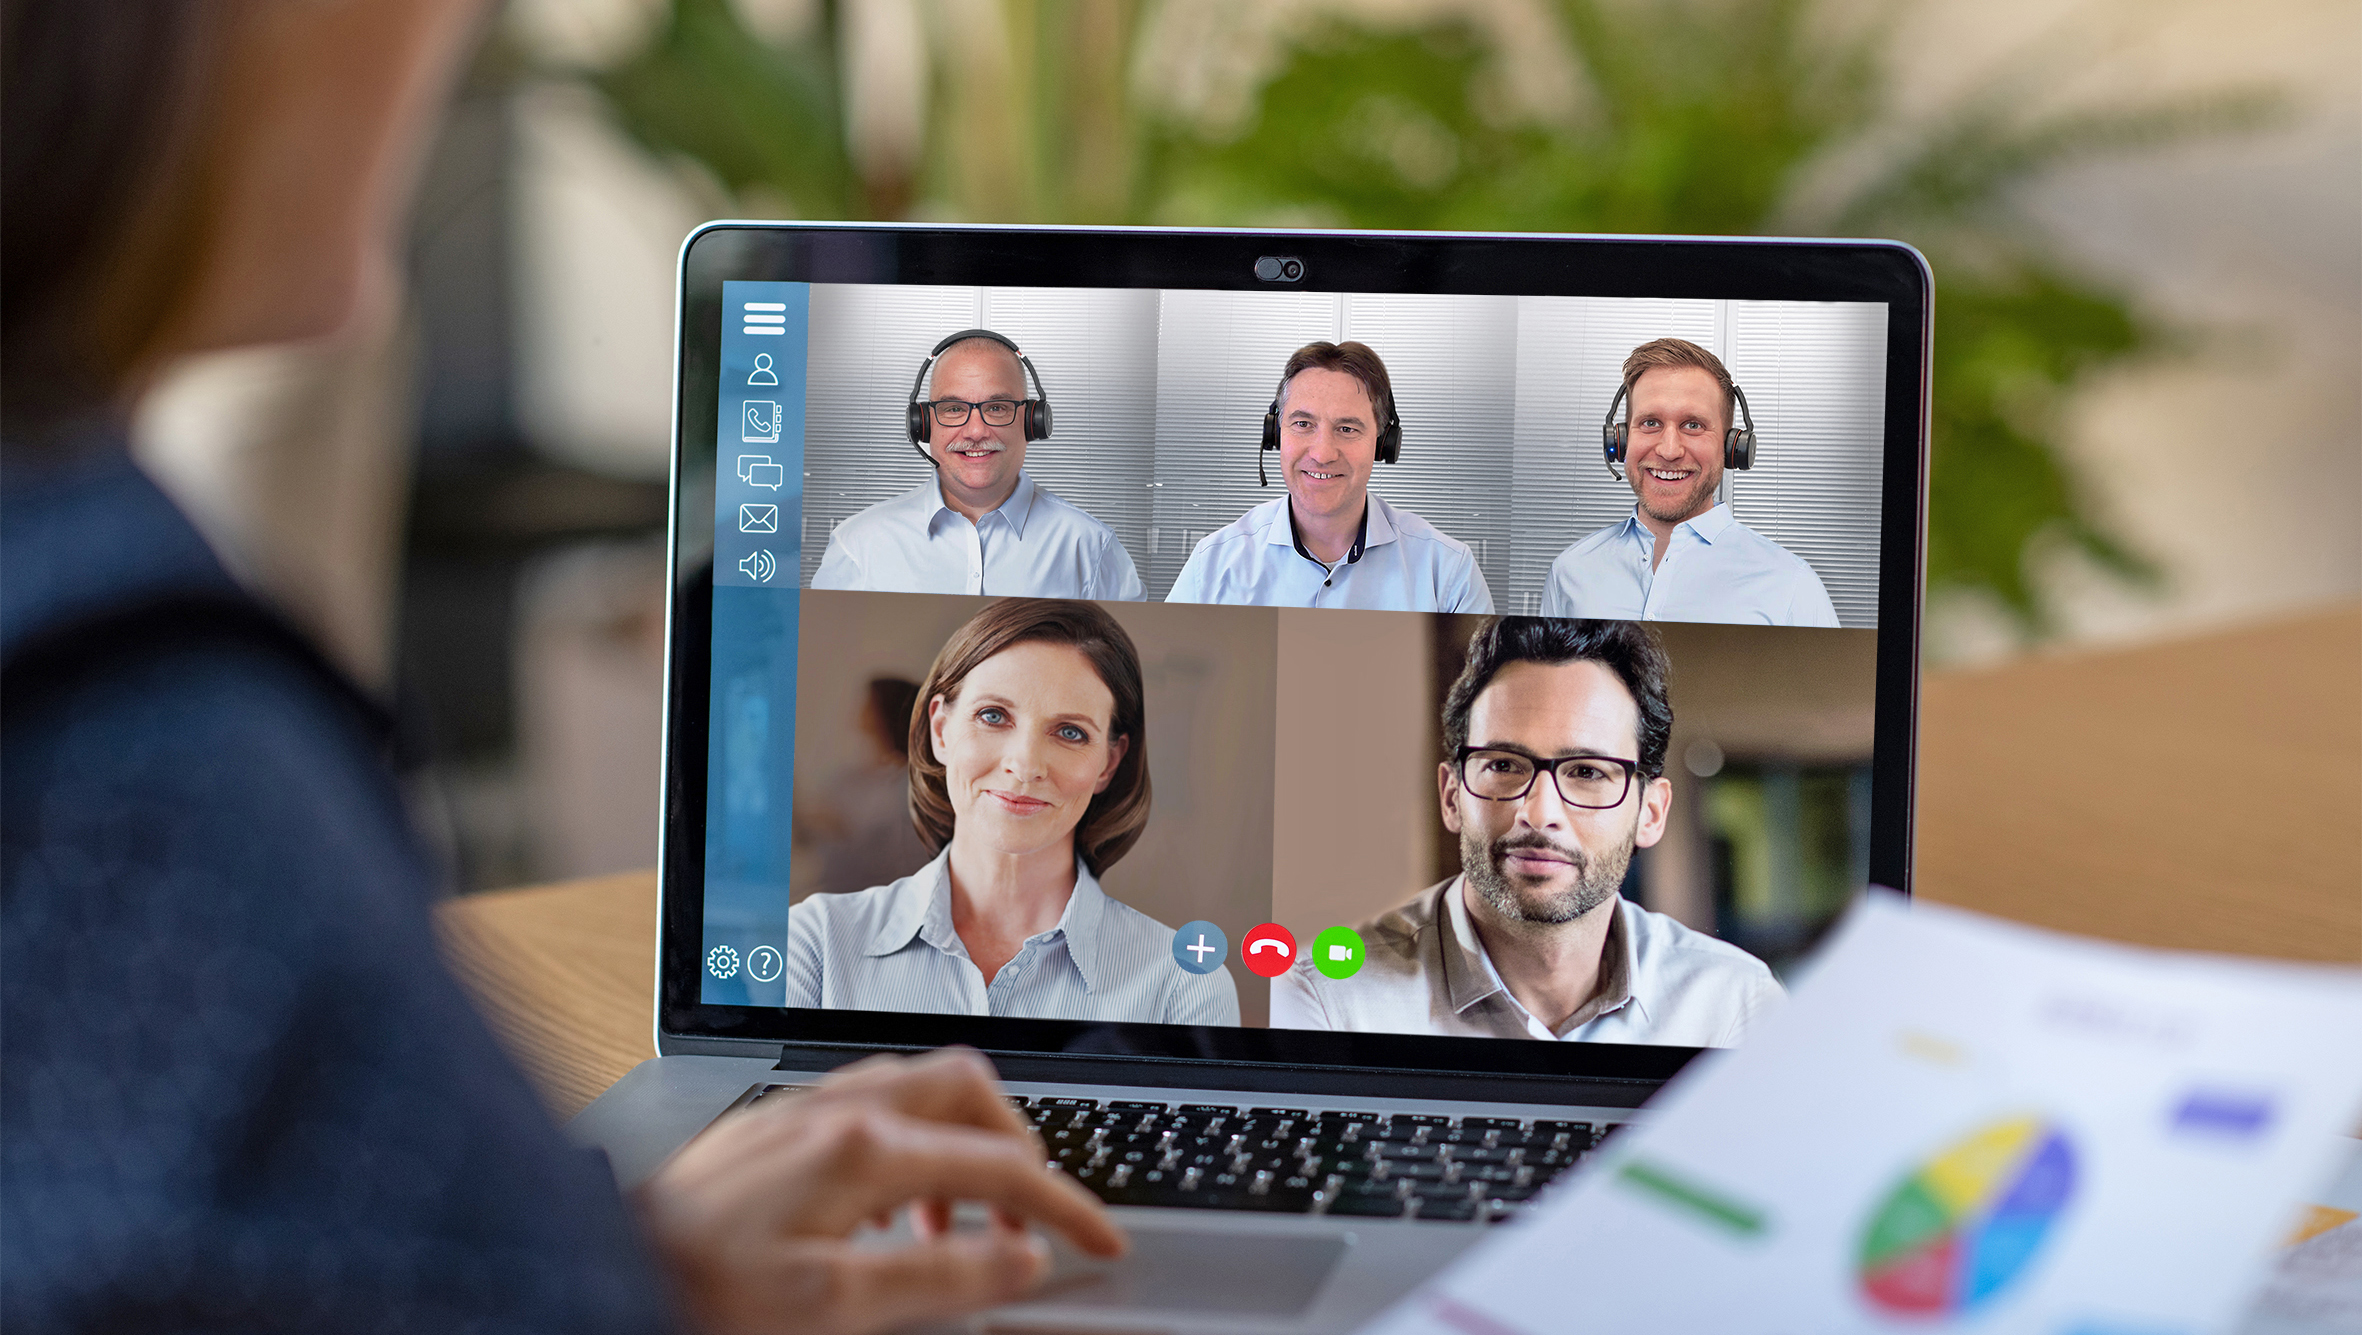 La pantalla del portátil muestra varias personas en una reunión en línea